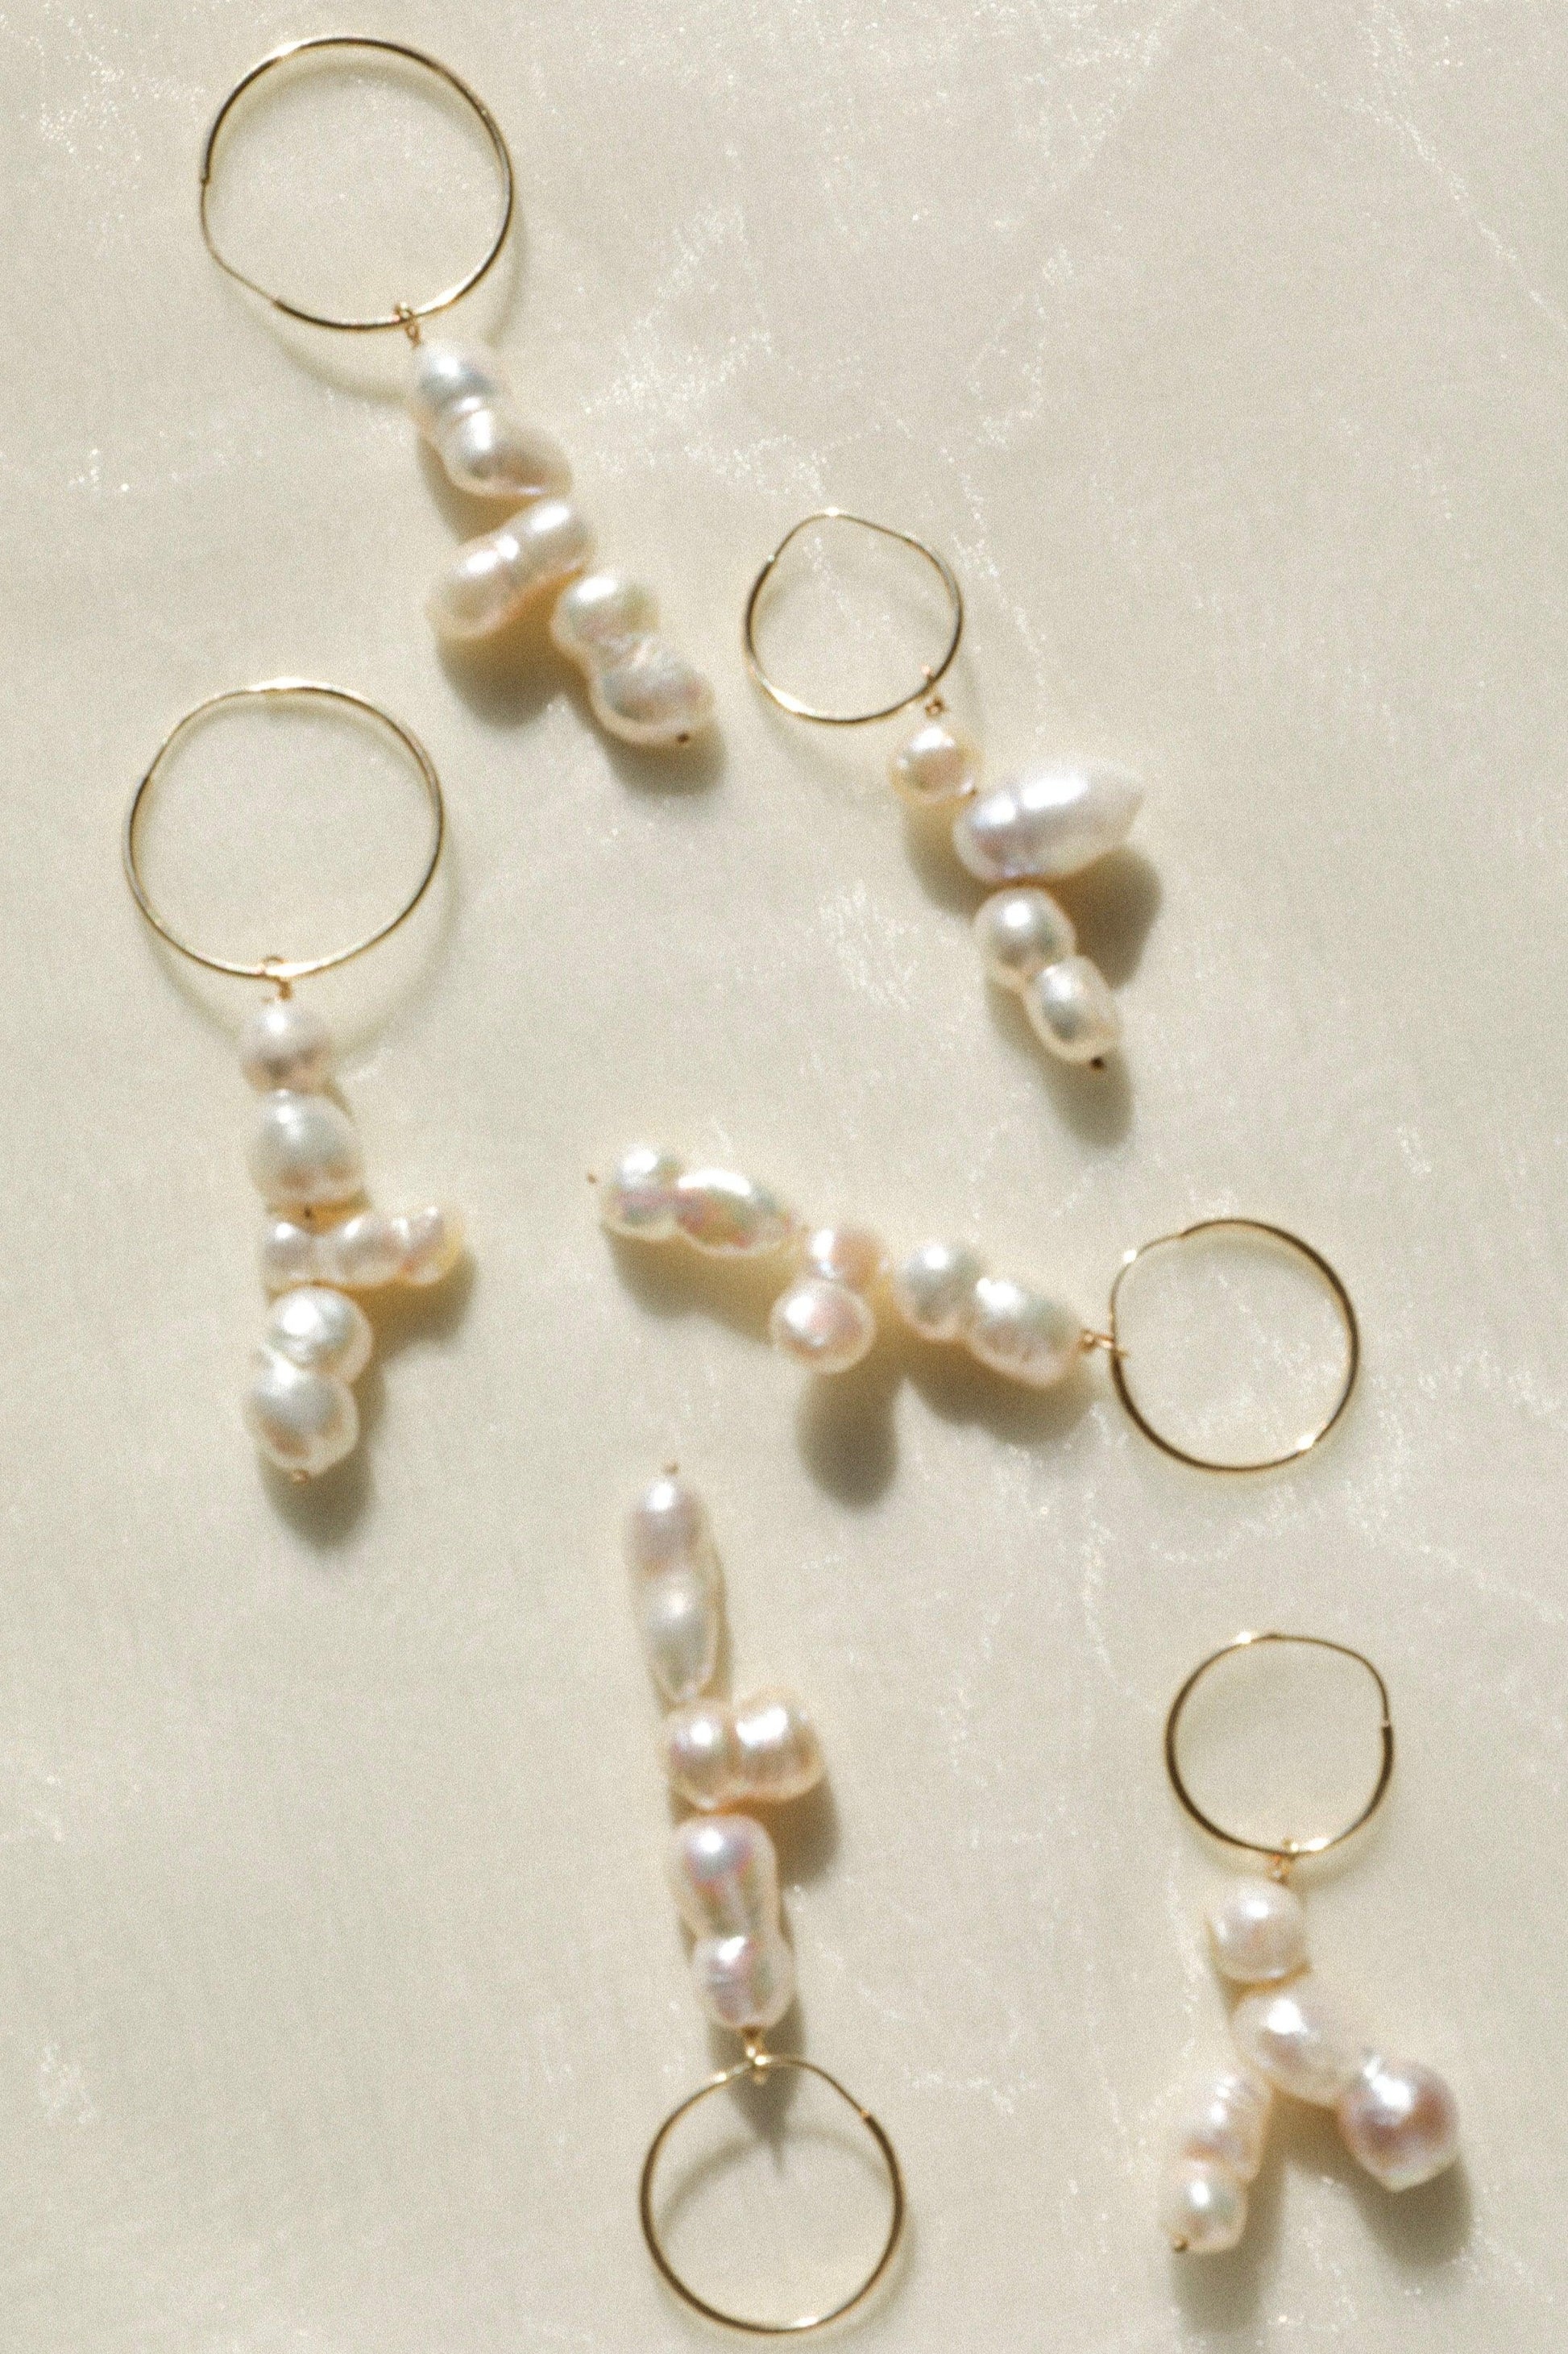 14karat_solid_gold_hoop_earrings_wih_freshwater_pearl_pendants